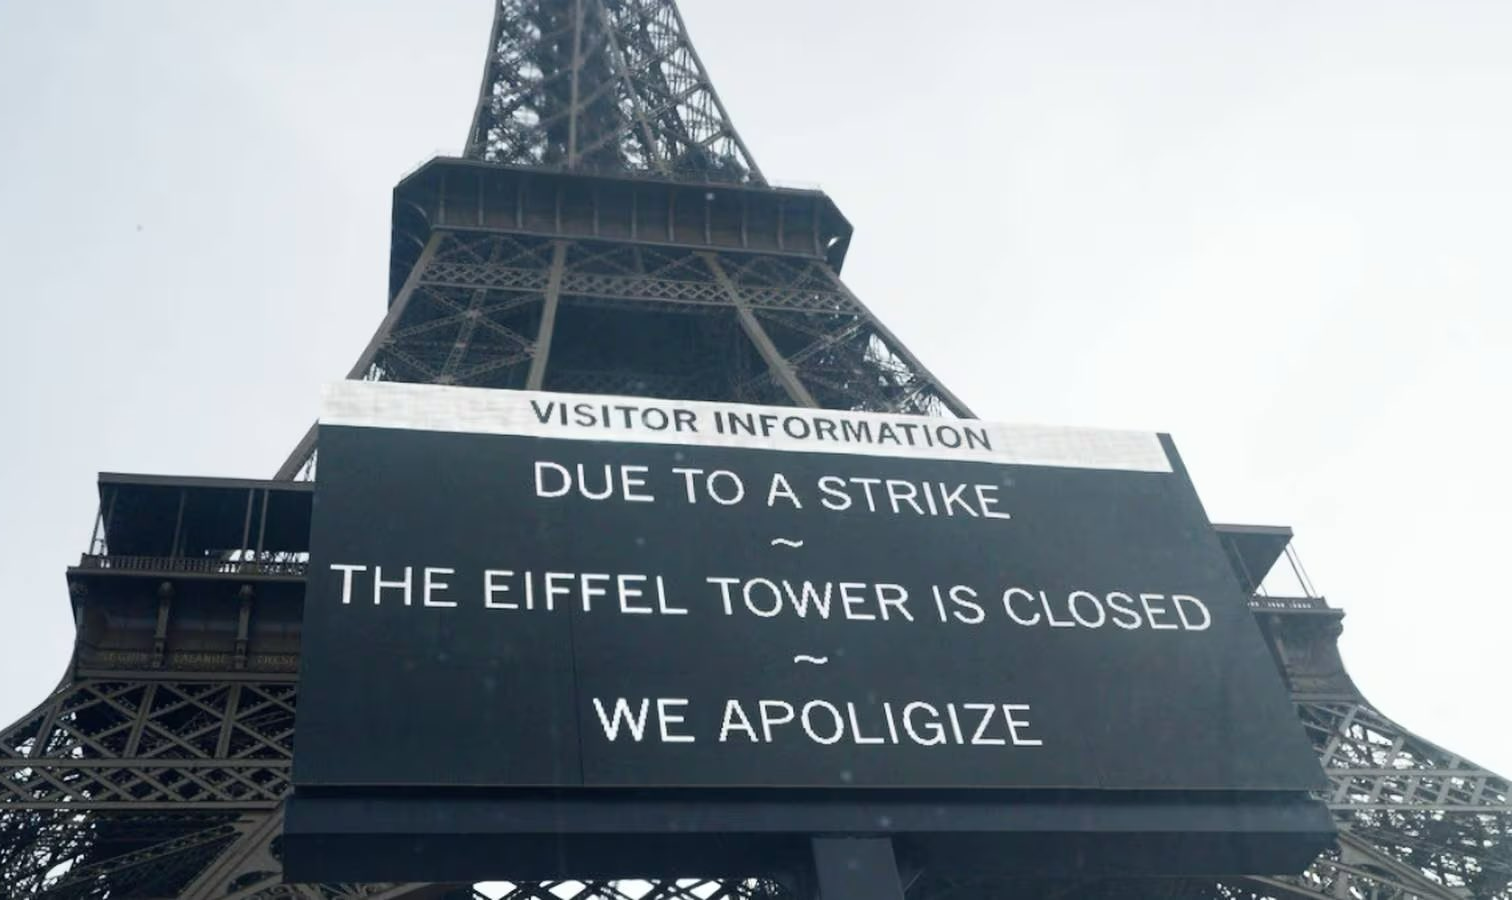 Acesso ao monumento ícone da capital francesa foi fechado por tempo indeterminado nesta quarta-feira (27/12), no centenário da morte de seu criador, Gustave Eiffel; trabalhadores alegam problemas contratuais